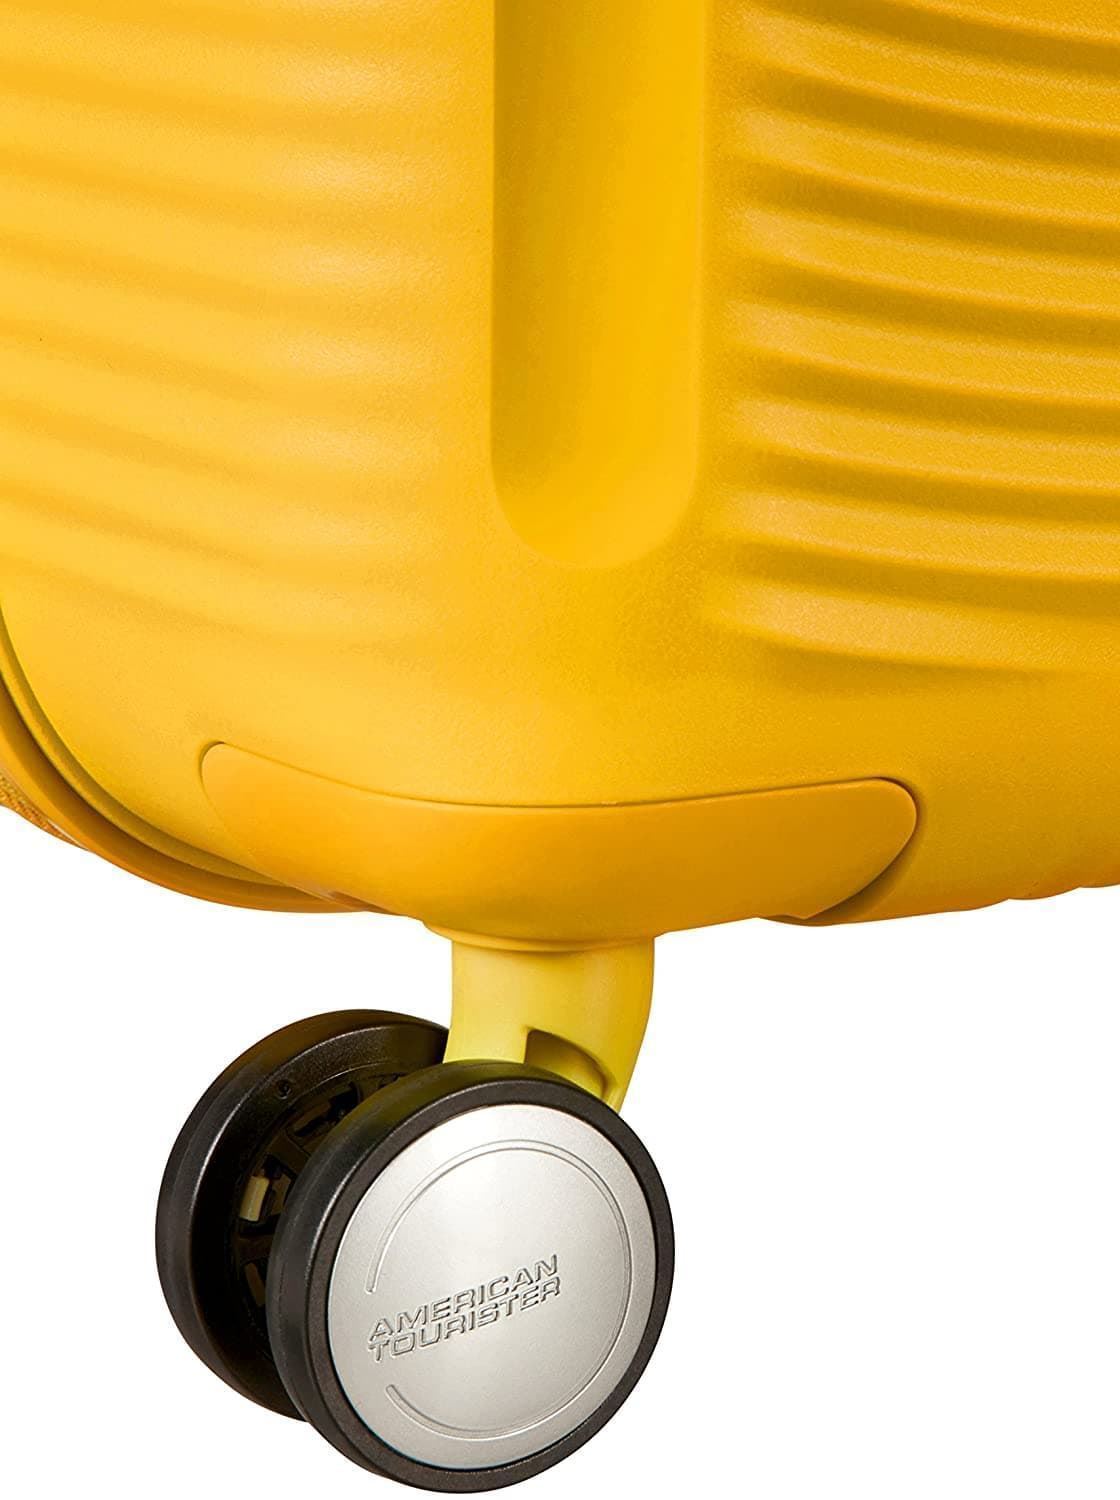 maleta american tourister soundbox grande expandible golden yellow - Imagen 10